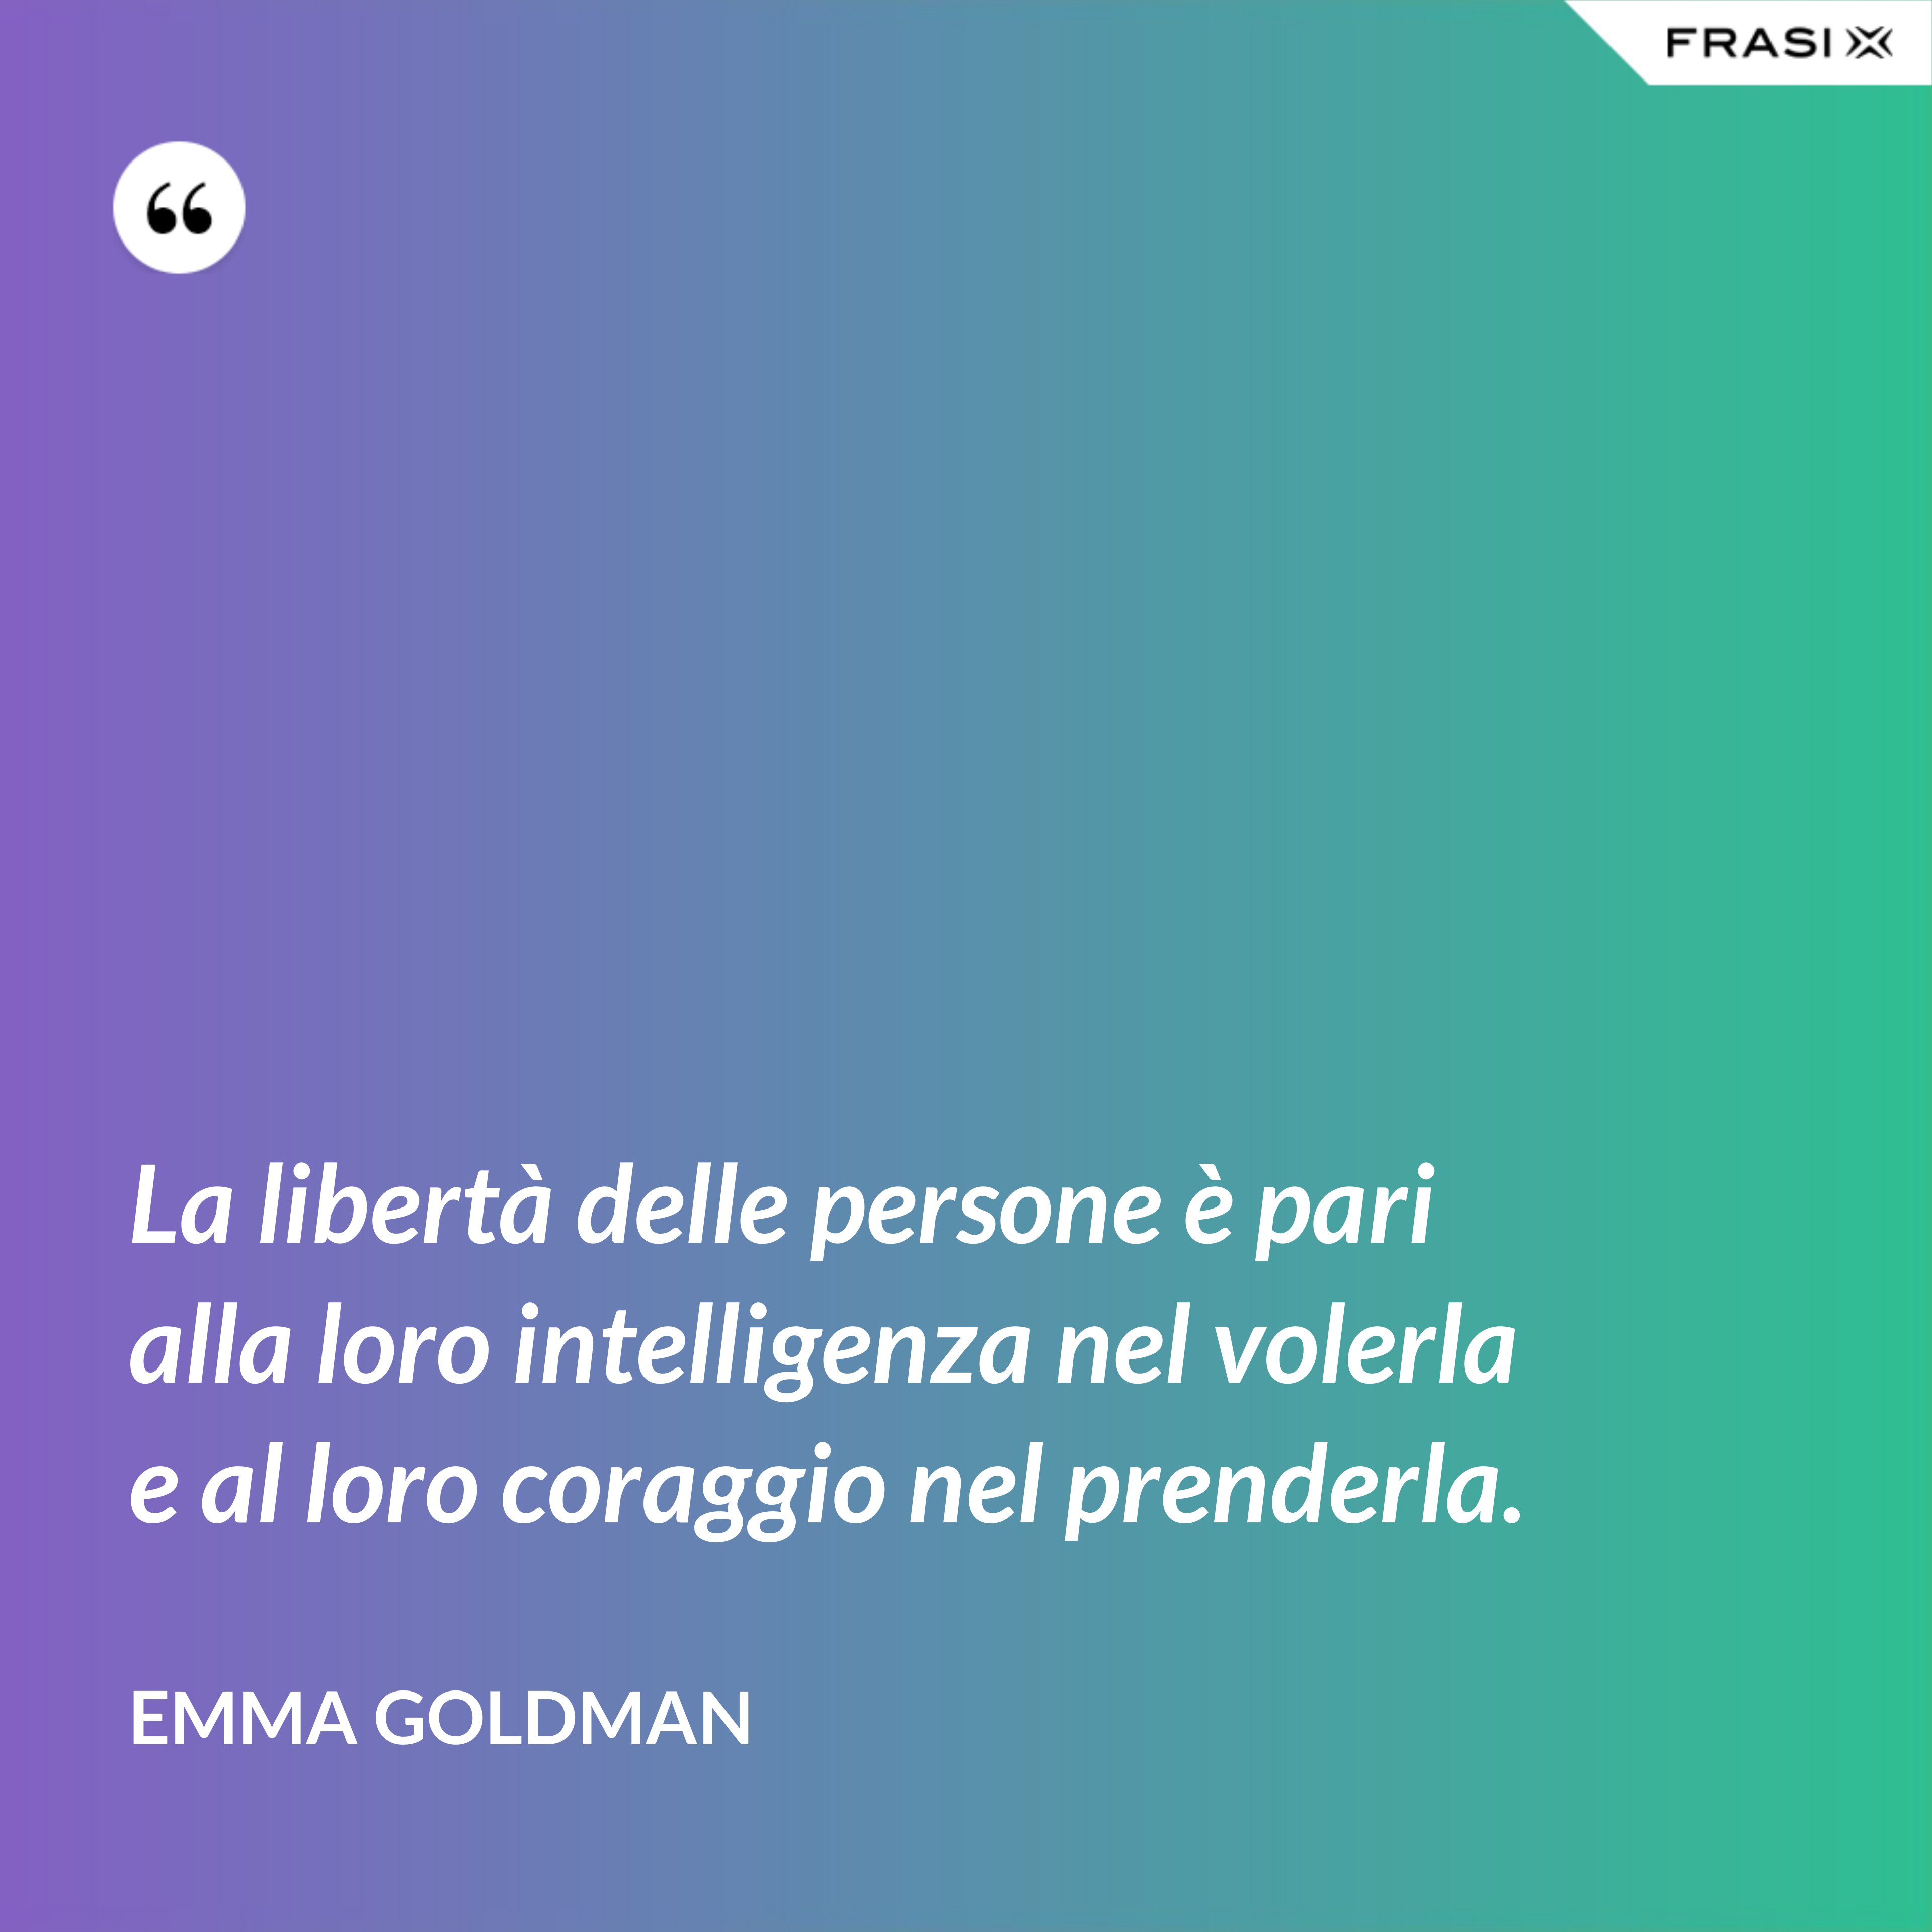 La libertà delle persone è pari alla loro intelligenza nel volerla e al loro coraggio nel prenderla. - Emma Goldman